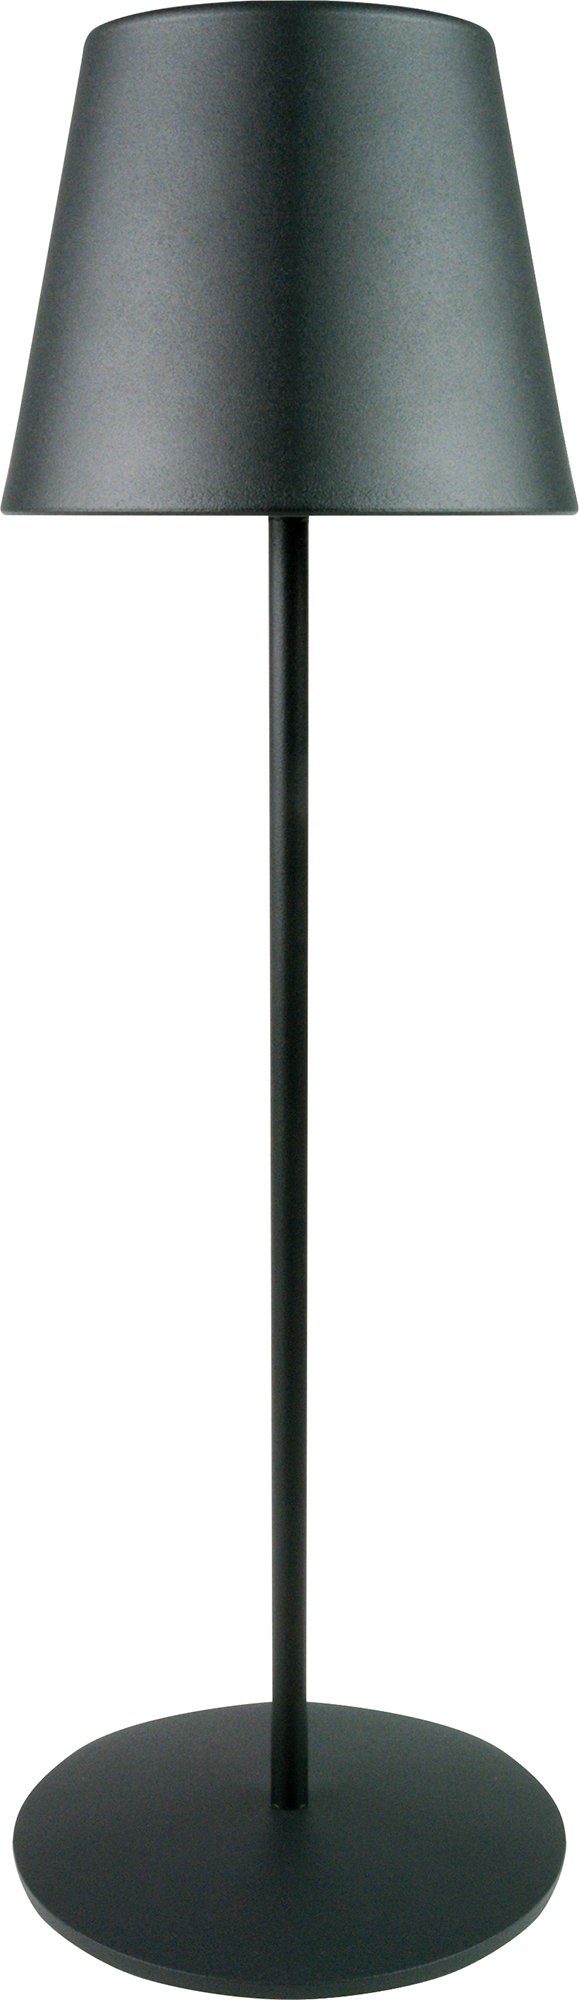 Tischleuchte 013, Schwaiger schwarz mit Touchpanel, IP44 OTL200 LED